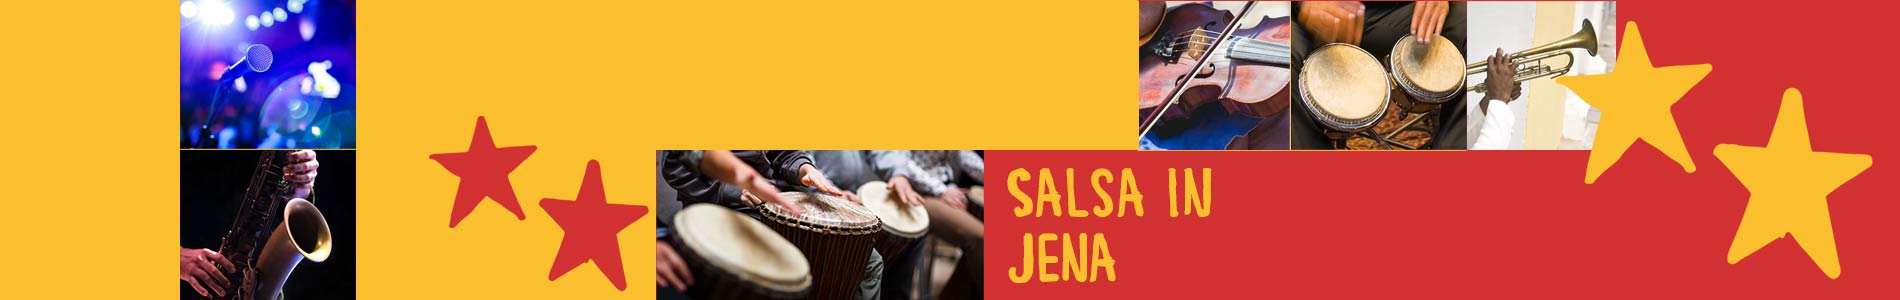 Salsa in Jena – Salsa lernen und tanzen, Tanzkurse, Partys, Veranstaltungen